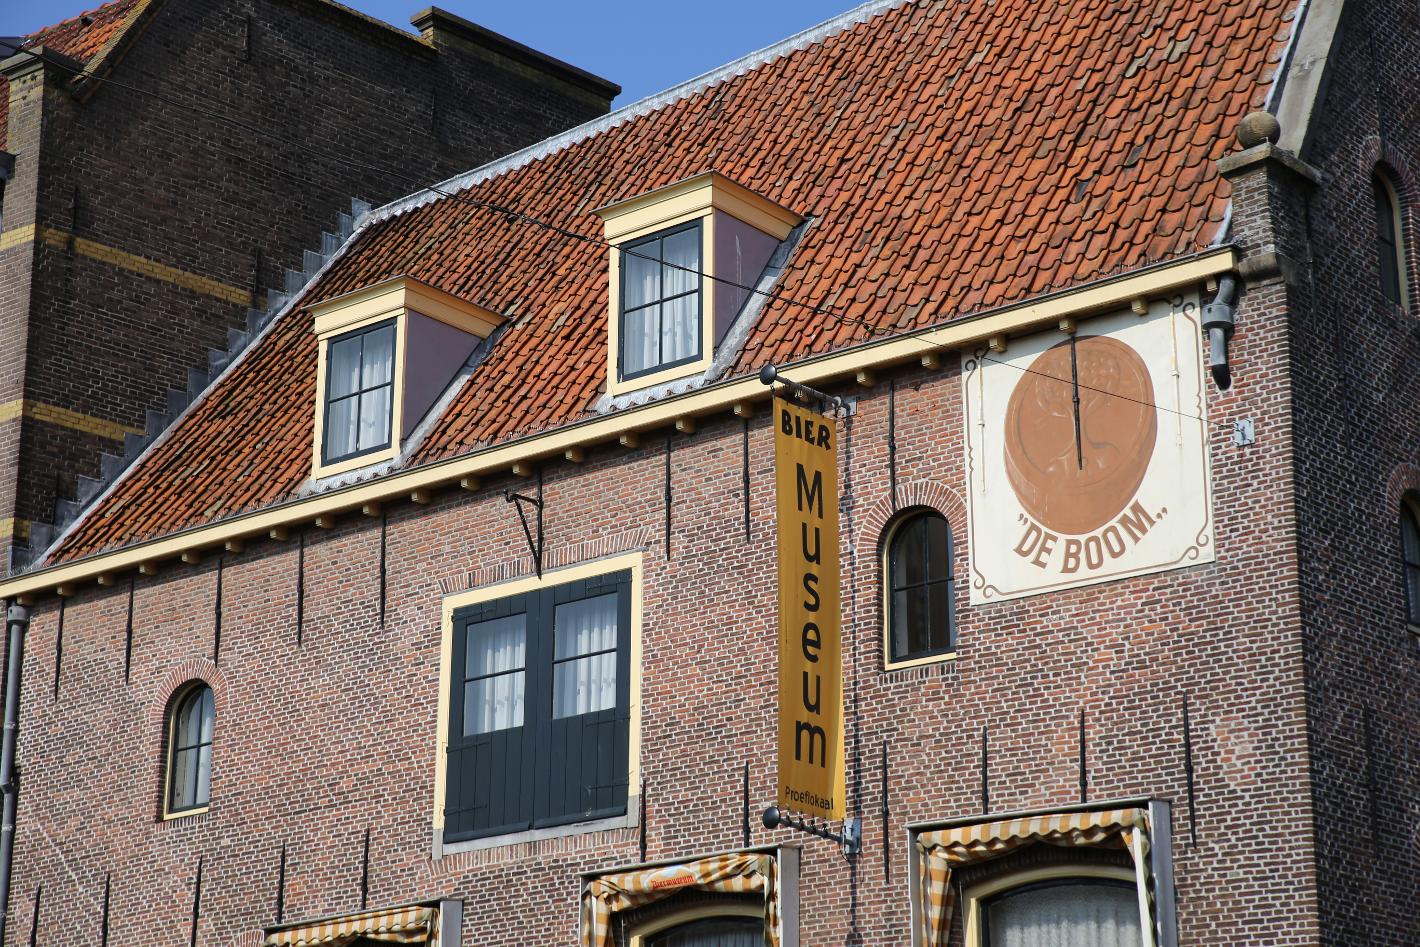 Photo Biermuseum De Boom in Alkmaar, View, Museums & galleries - #1